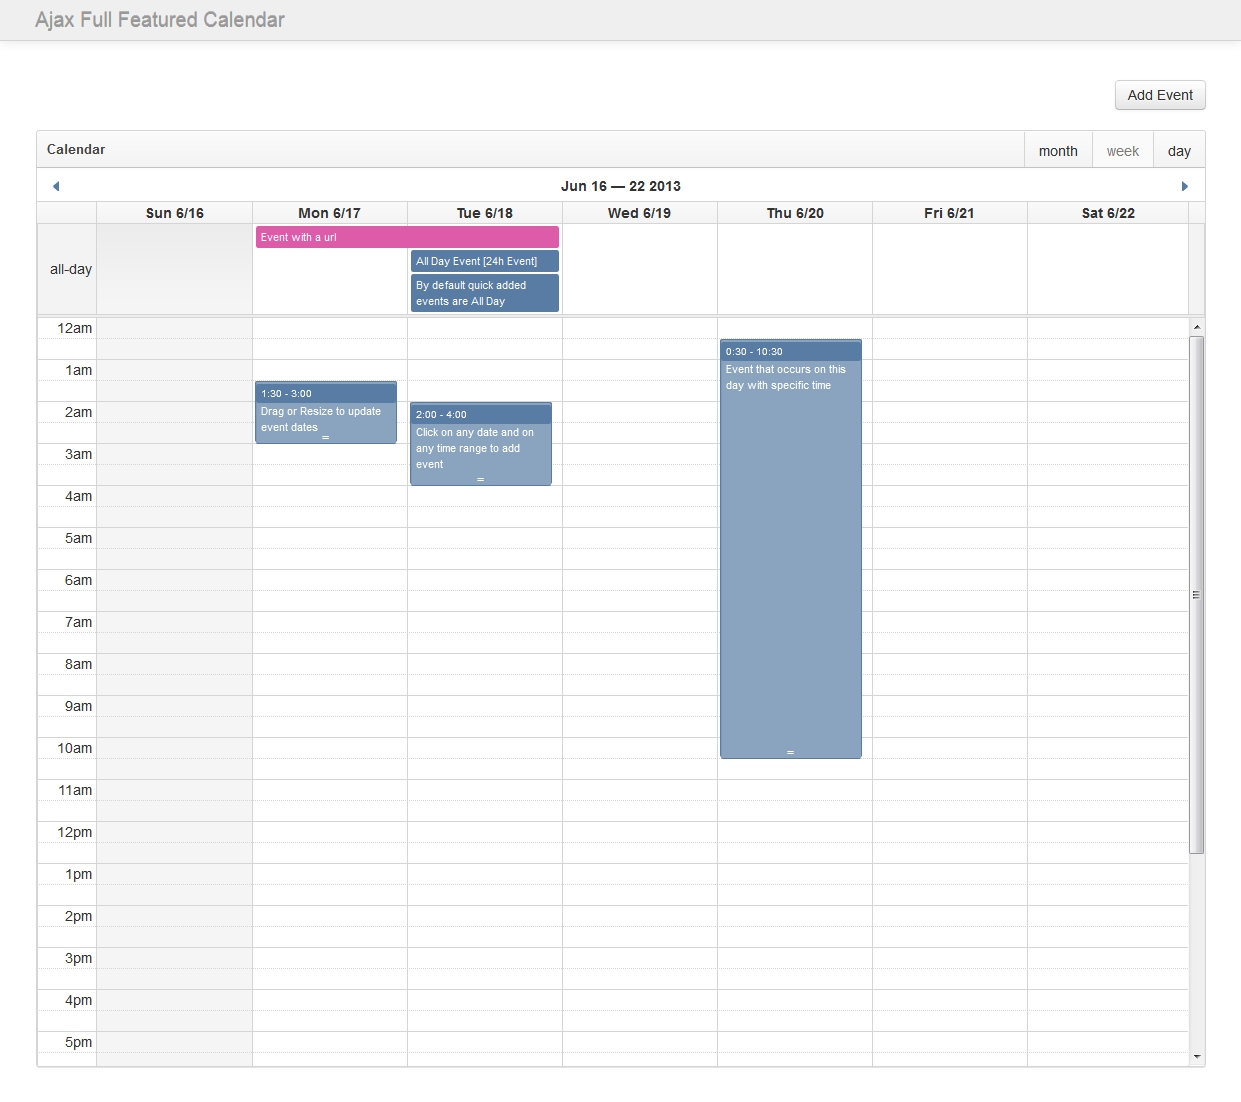 Ajax Full Featured Calendar By Pauloreg | Codecanyon Bootstrap 3 Calendar Template